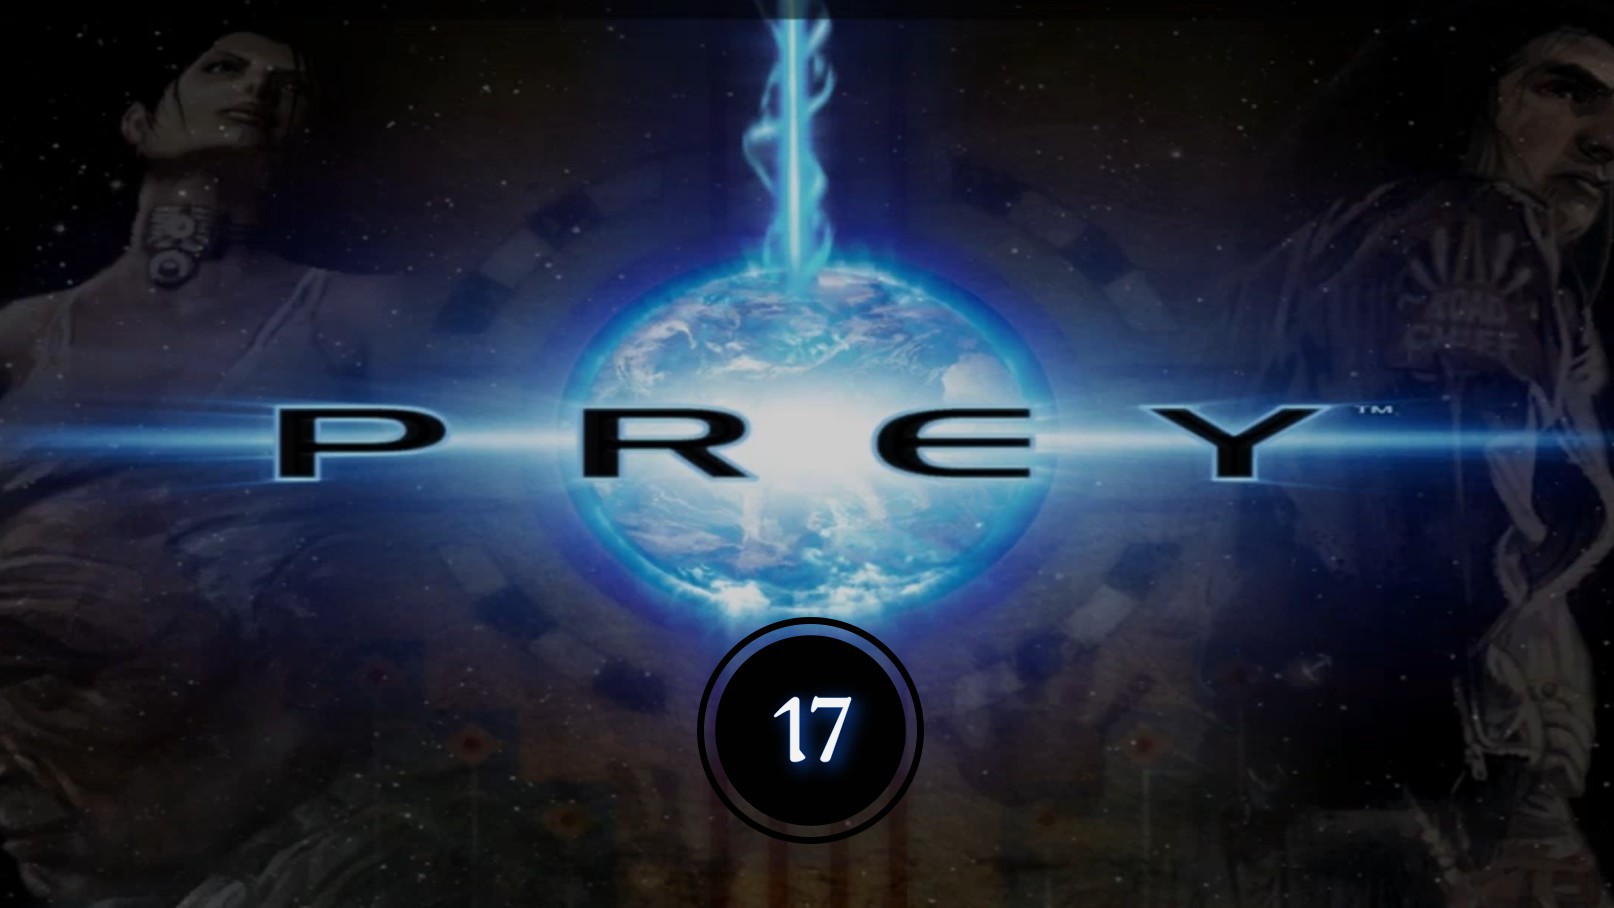 Prey (2006) 17